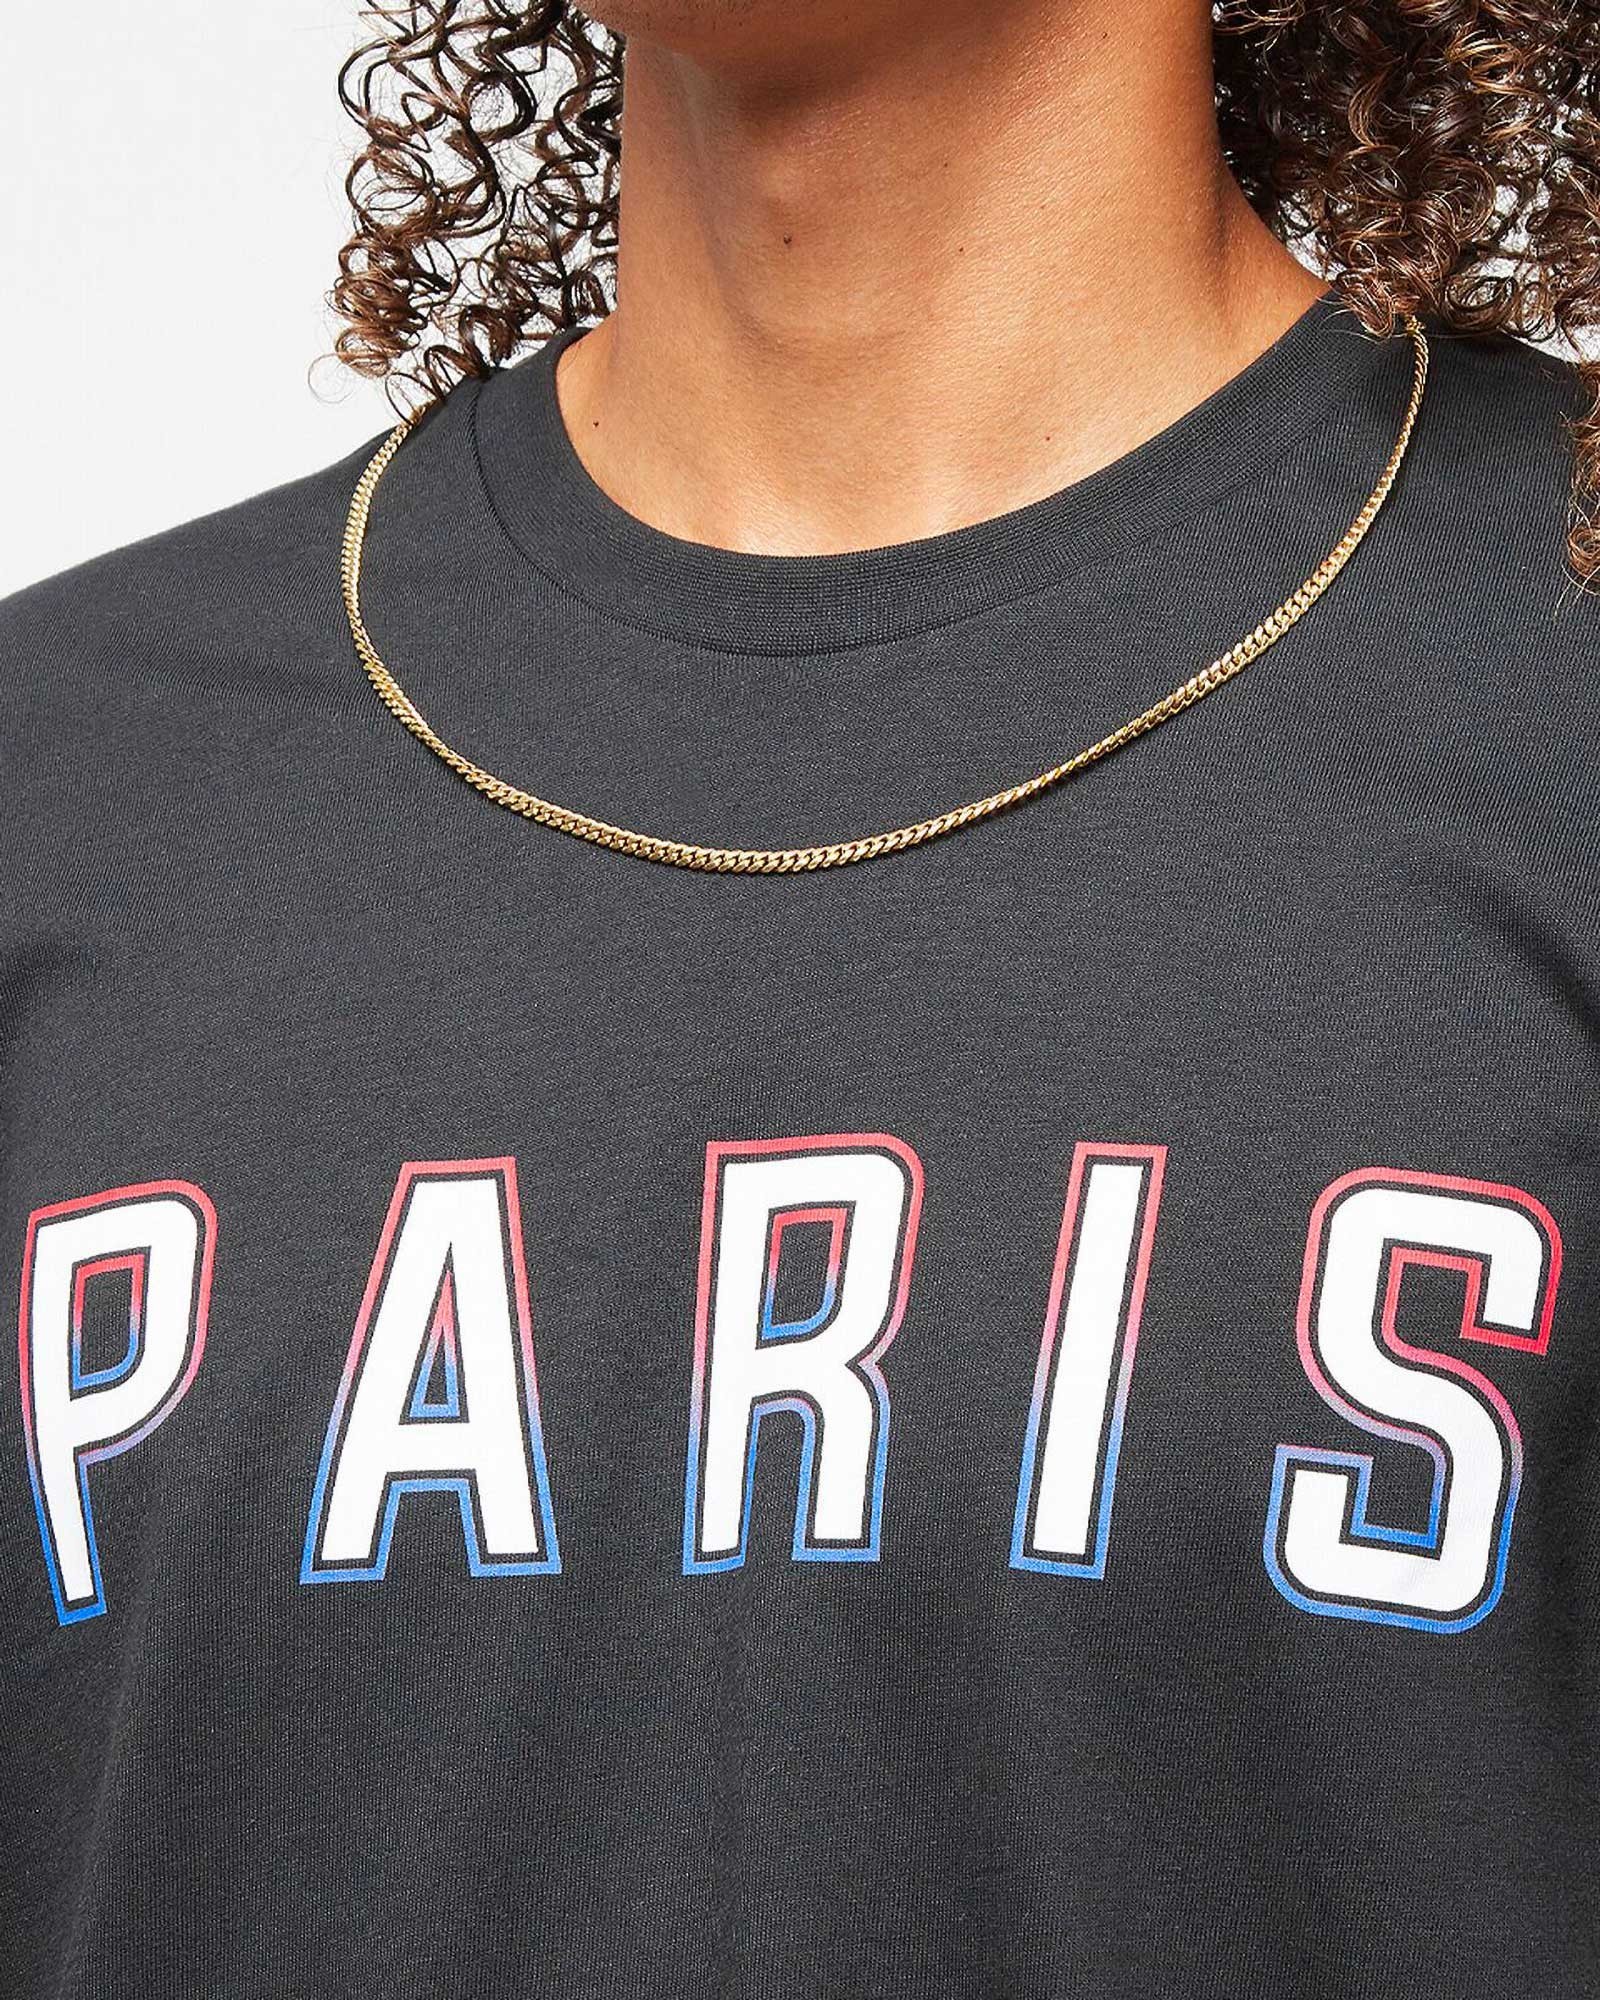 T-shirt Adidas Paris